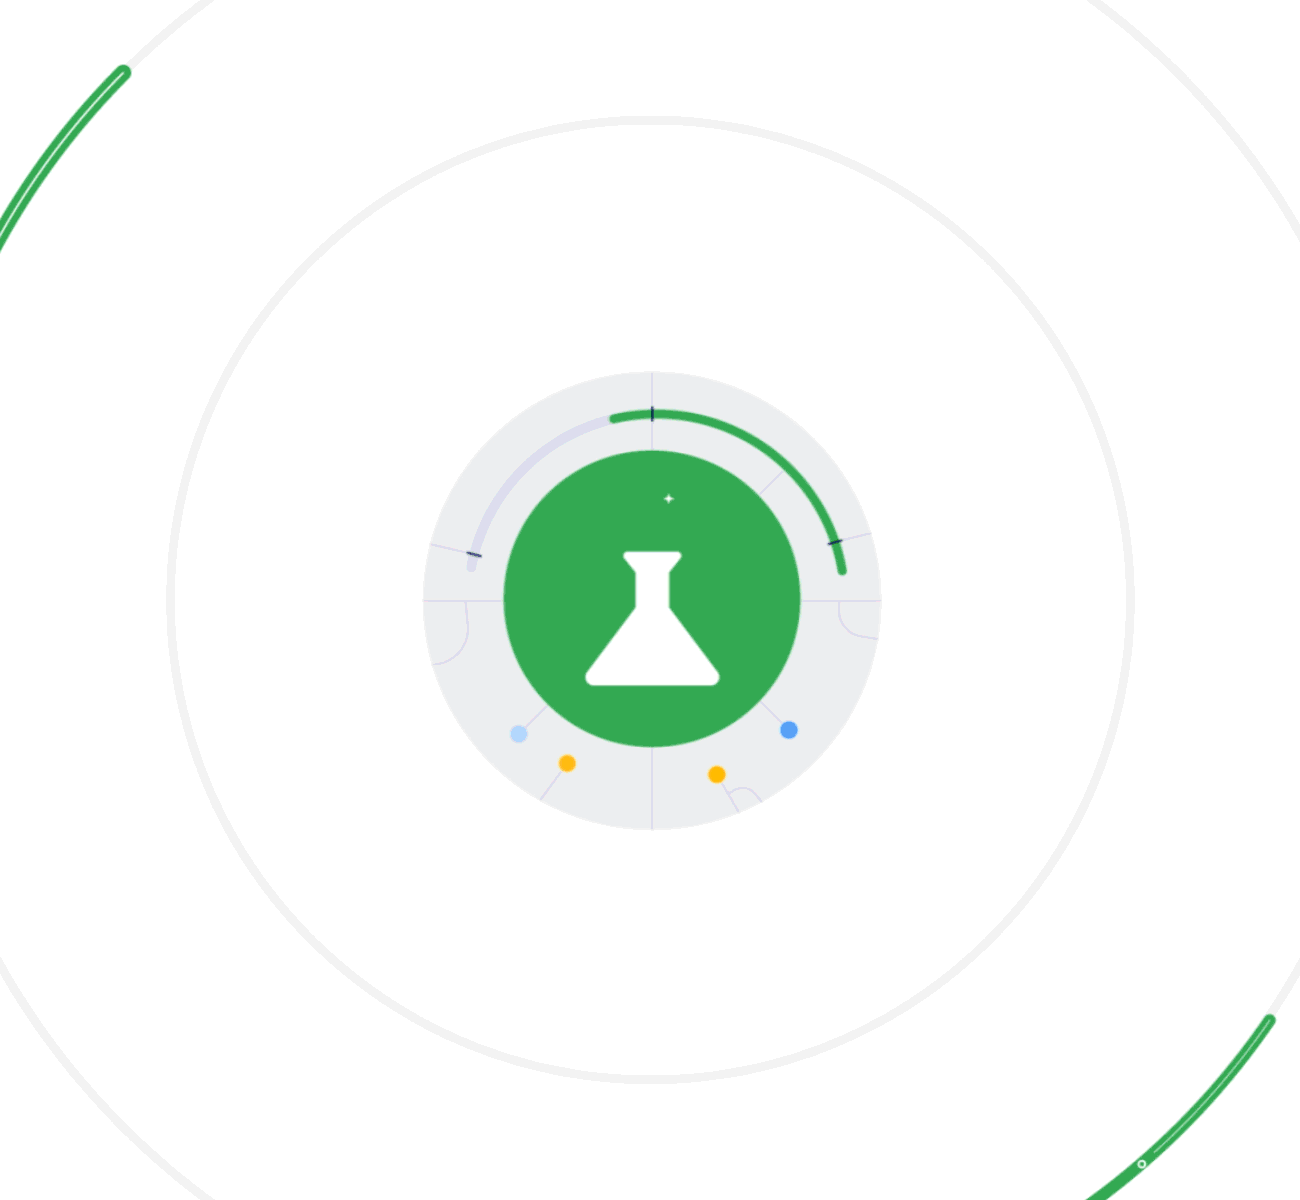 Animation eines grünen Glaskolben-Symbols, das von Symbolen der Google-Kanäle umrundet wird